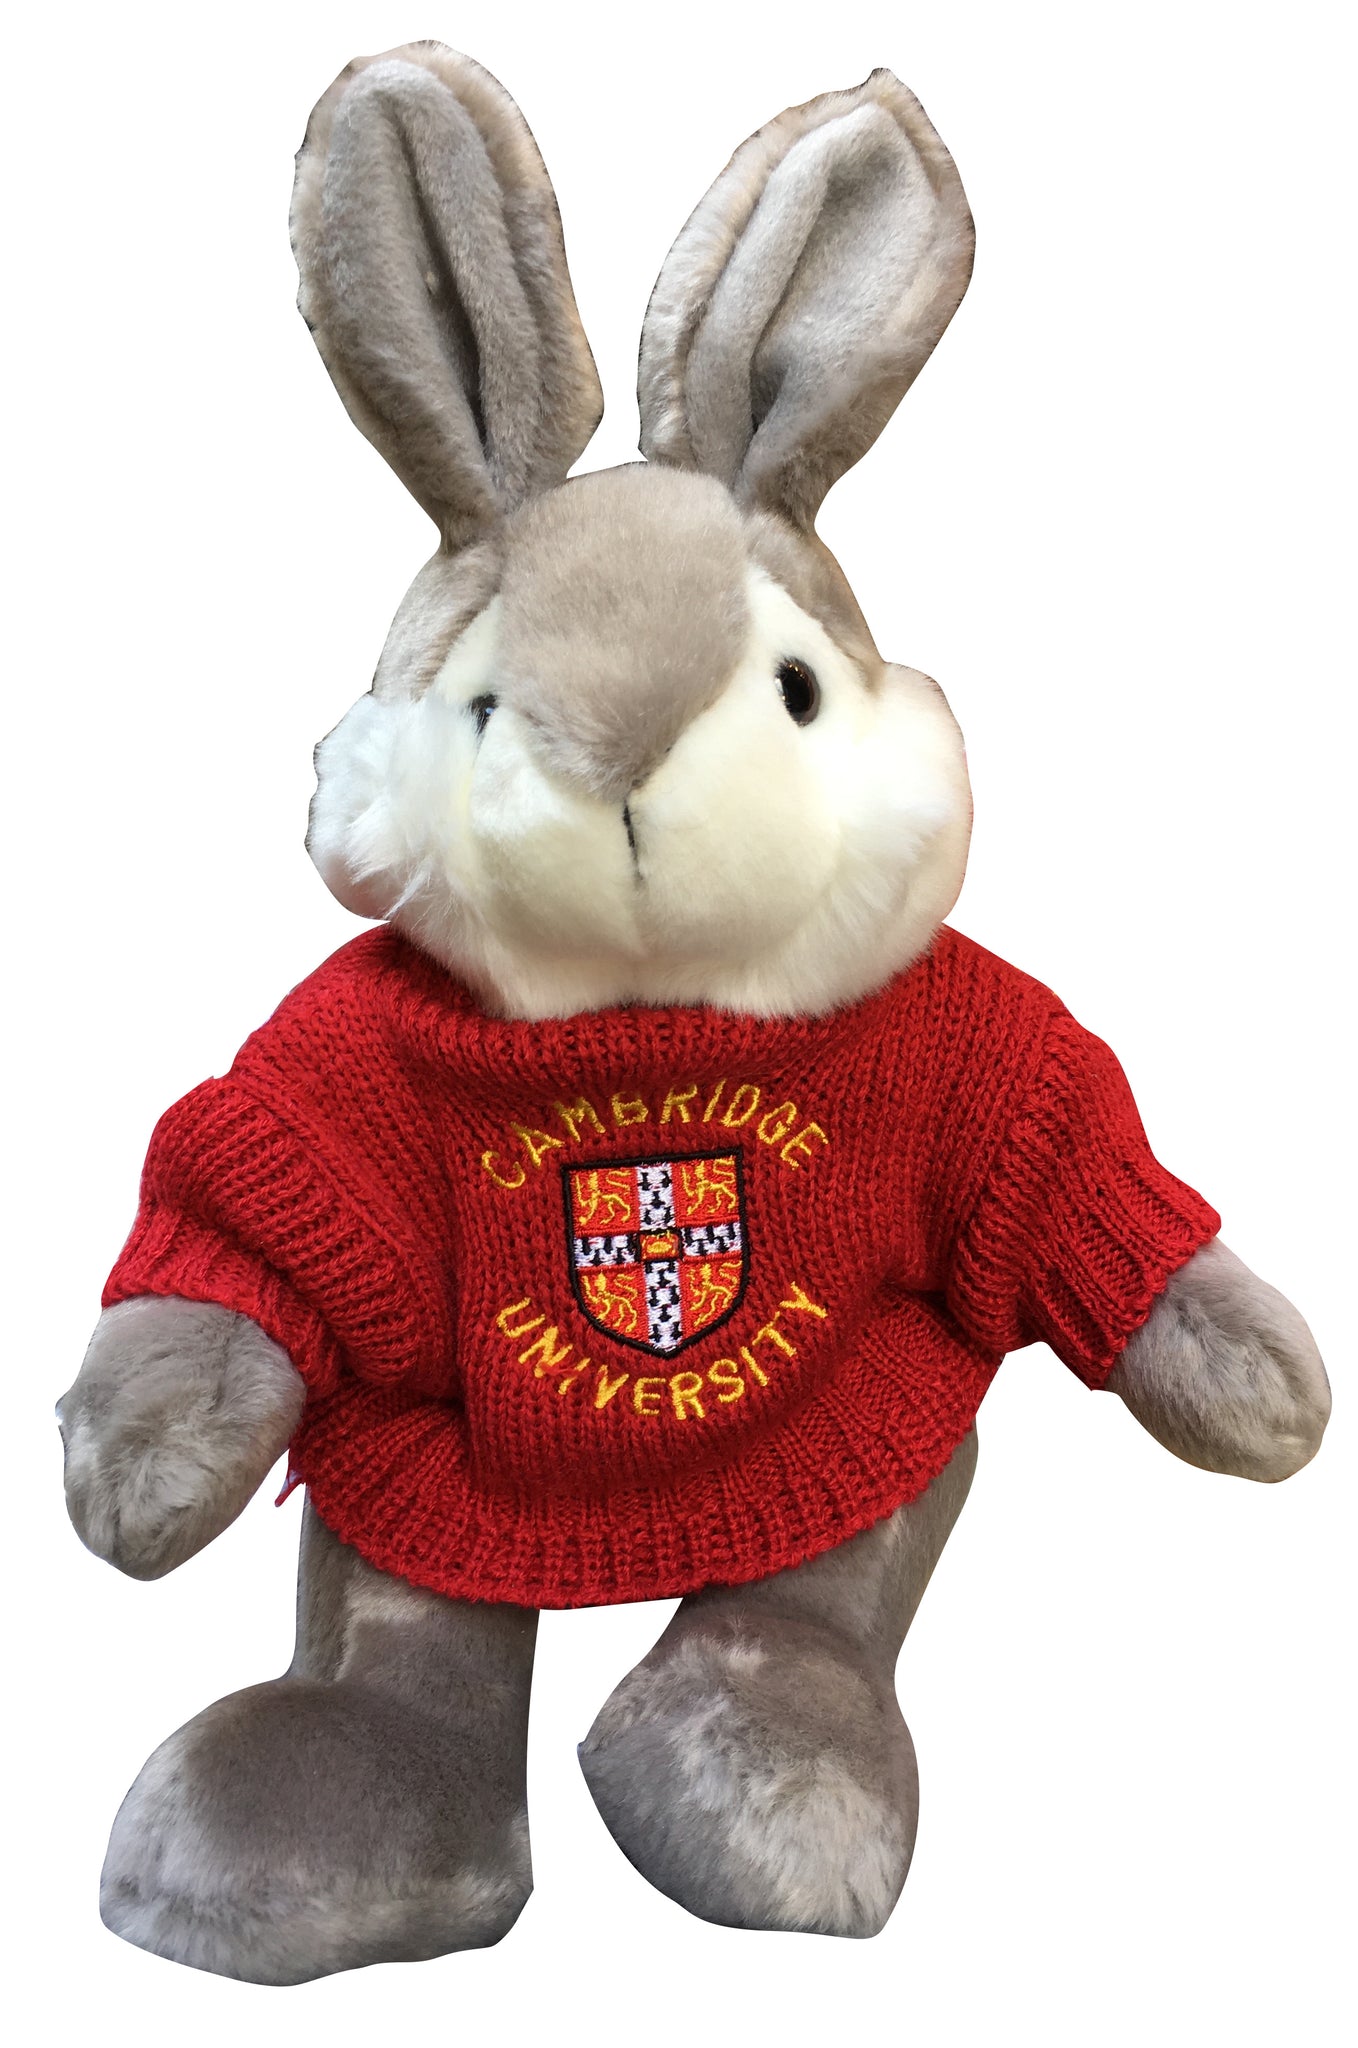 Cambridge University Plush Soft Toy - Byron Bunny with Cambridge University Sweater - Official Licenced product